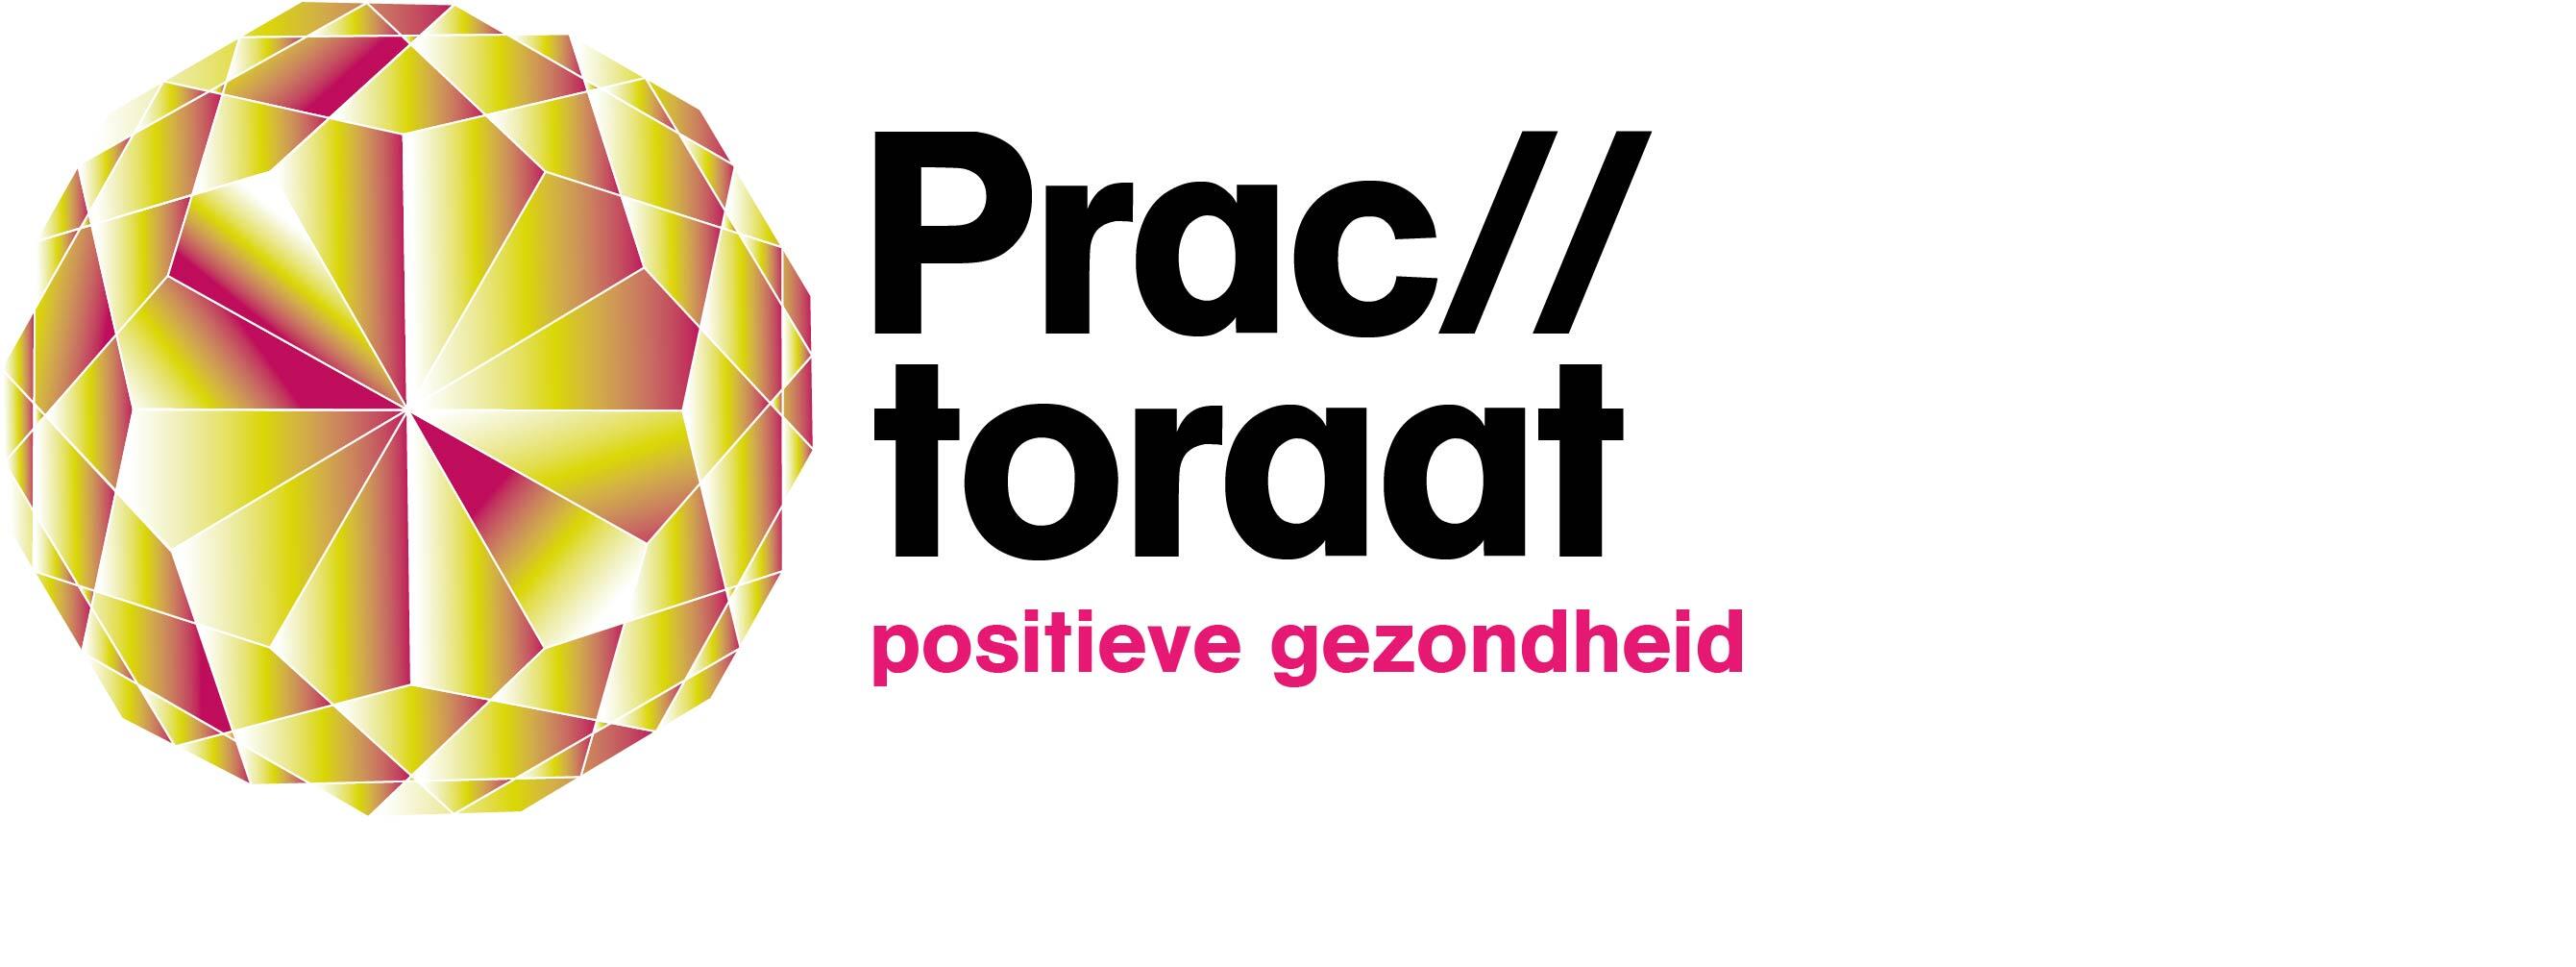 Logo practoraat positieve gezondheid